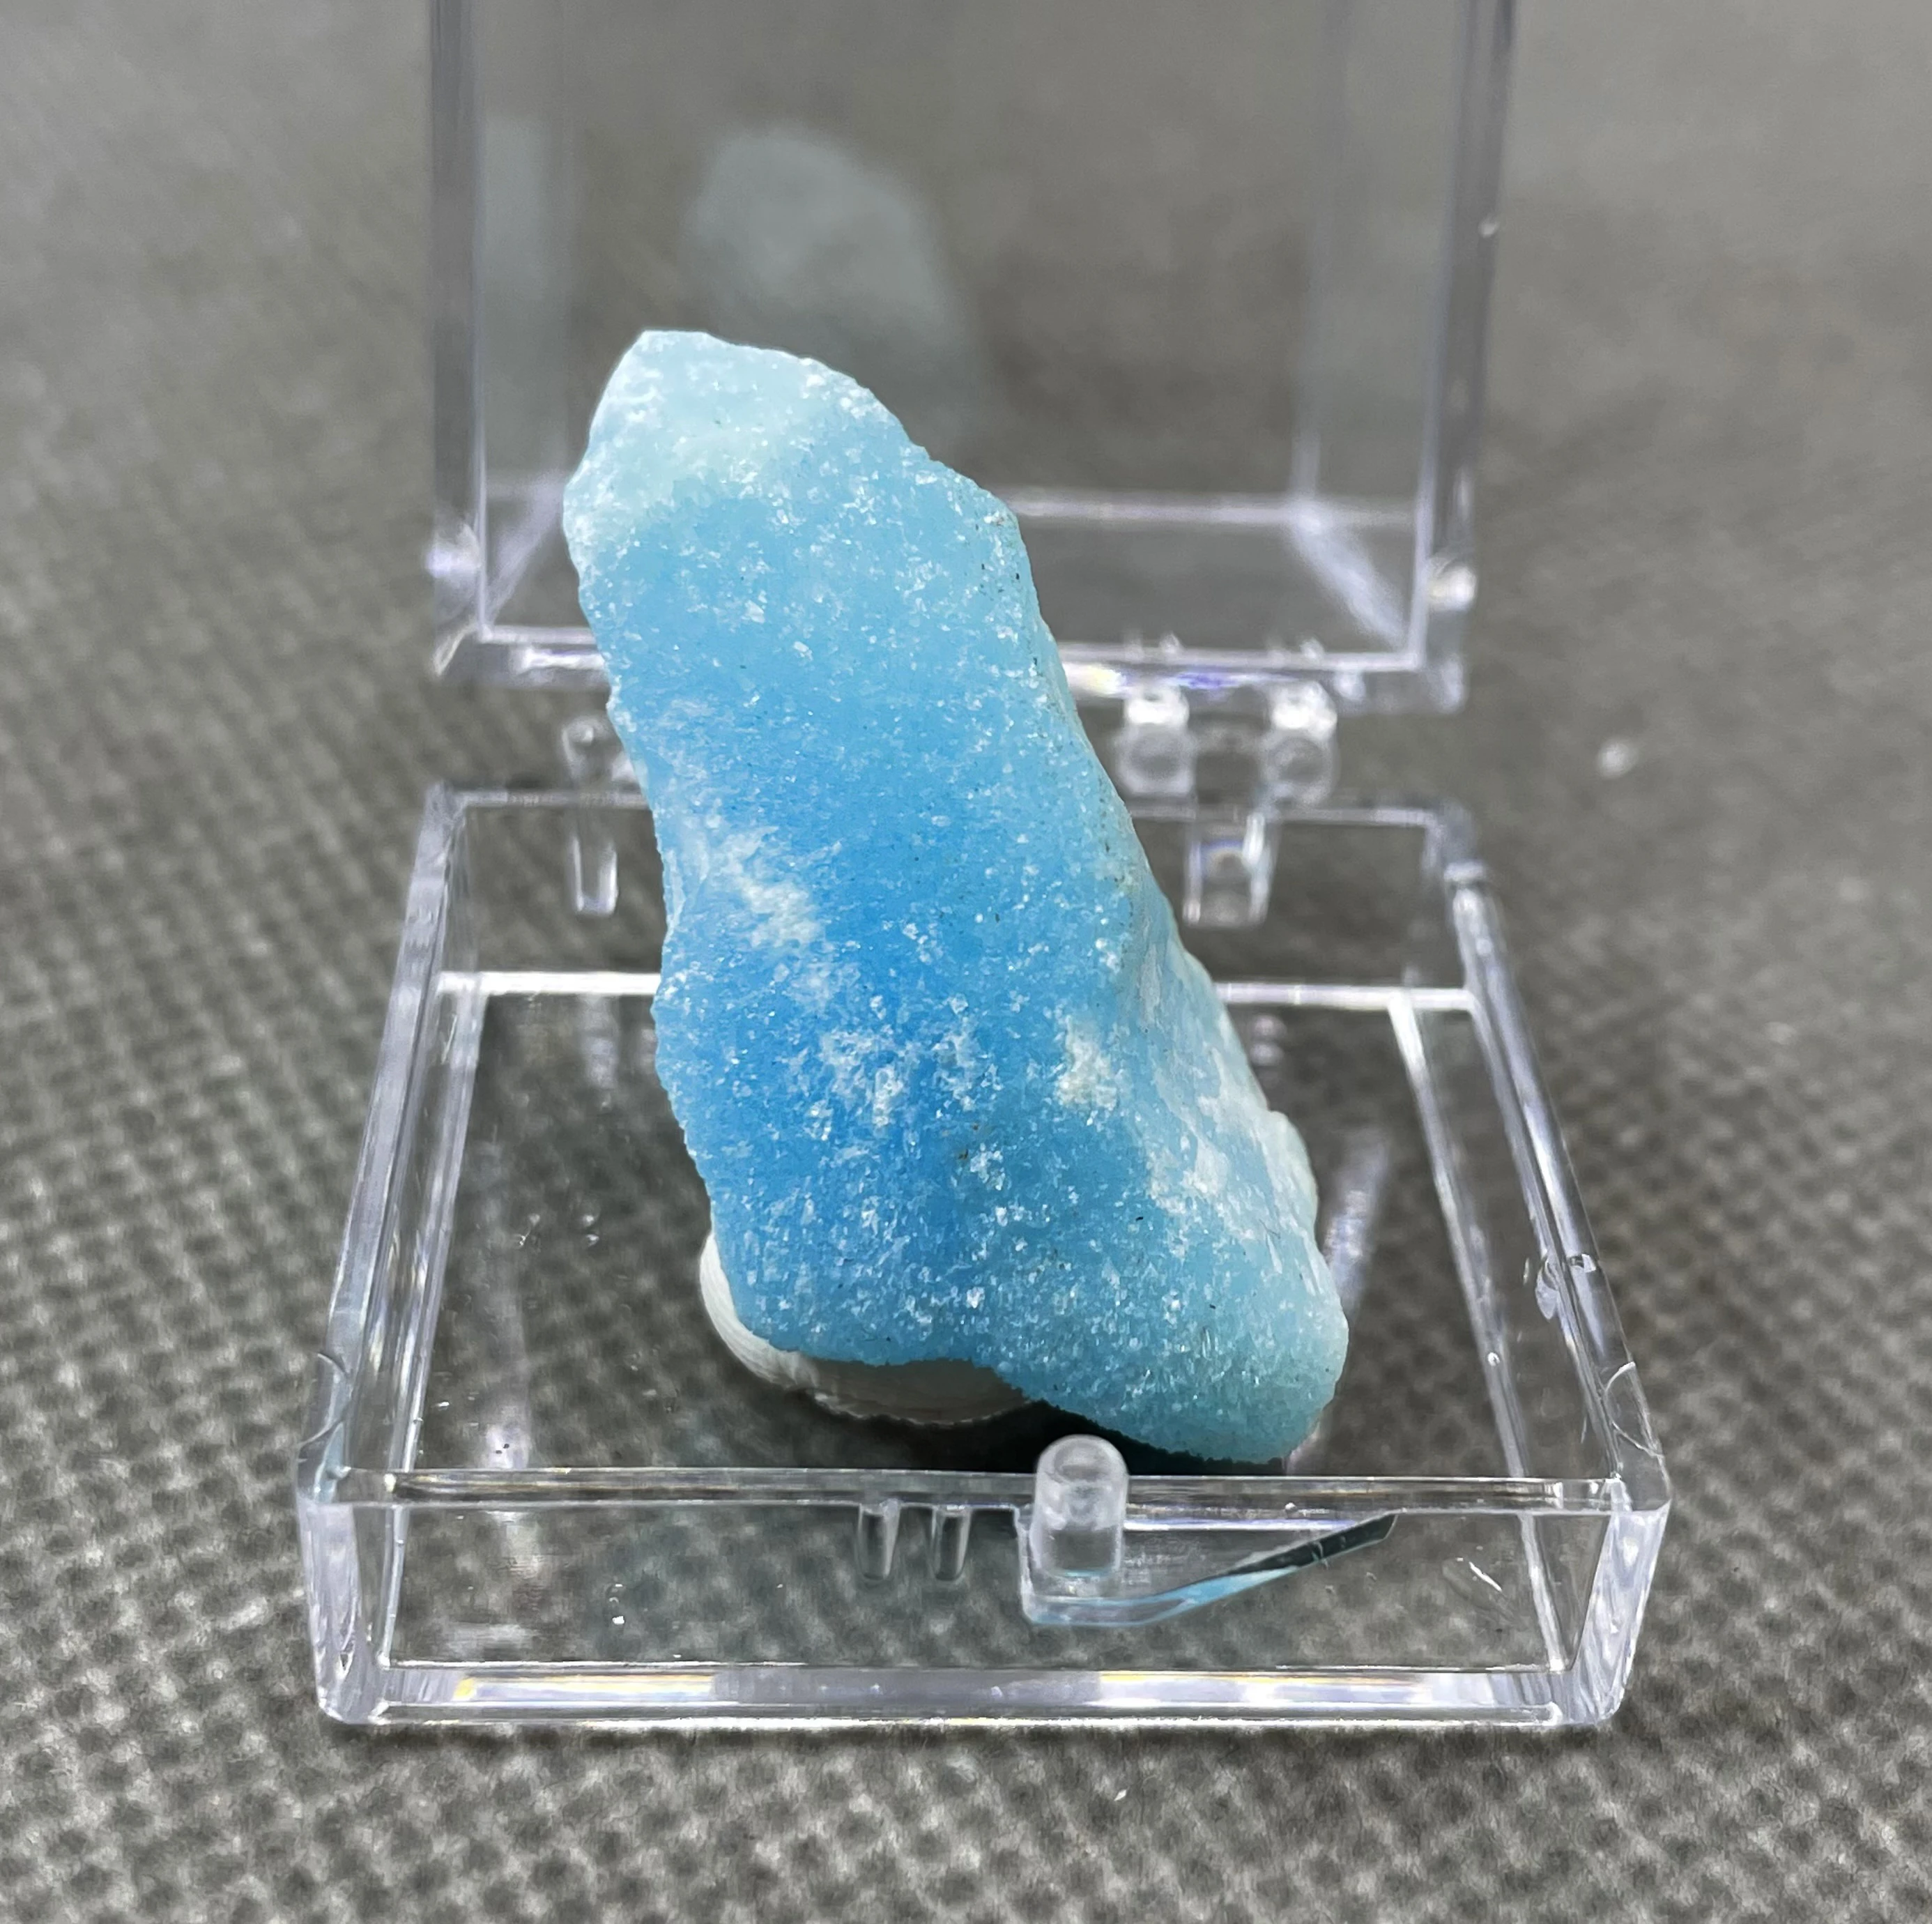 

Новинка! 100% натуральный синий арагонит, минералы, образцы камней и кристаллов, Исцеляющие кристаллы, кварц из Китая (размер коробки 3,4 см)